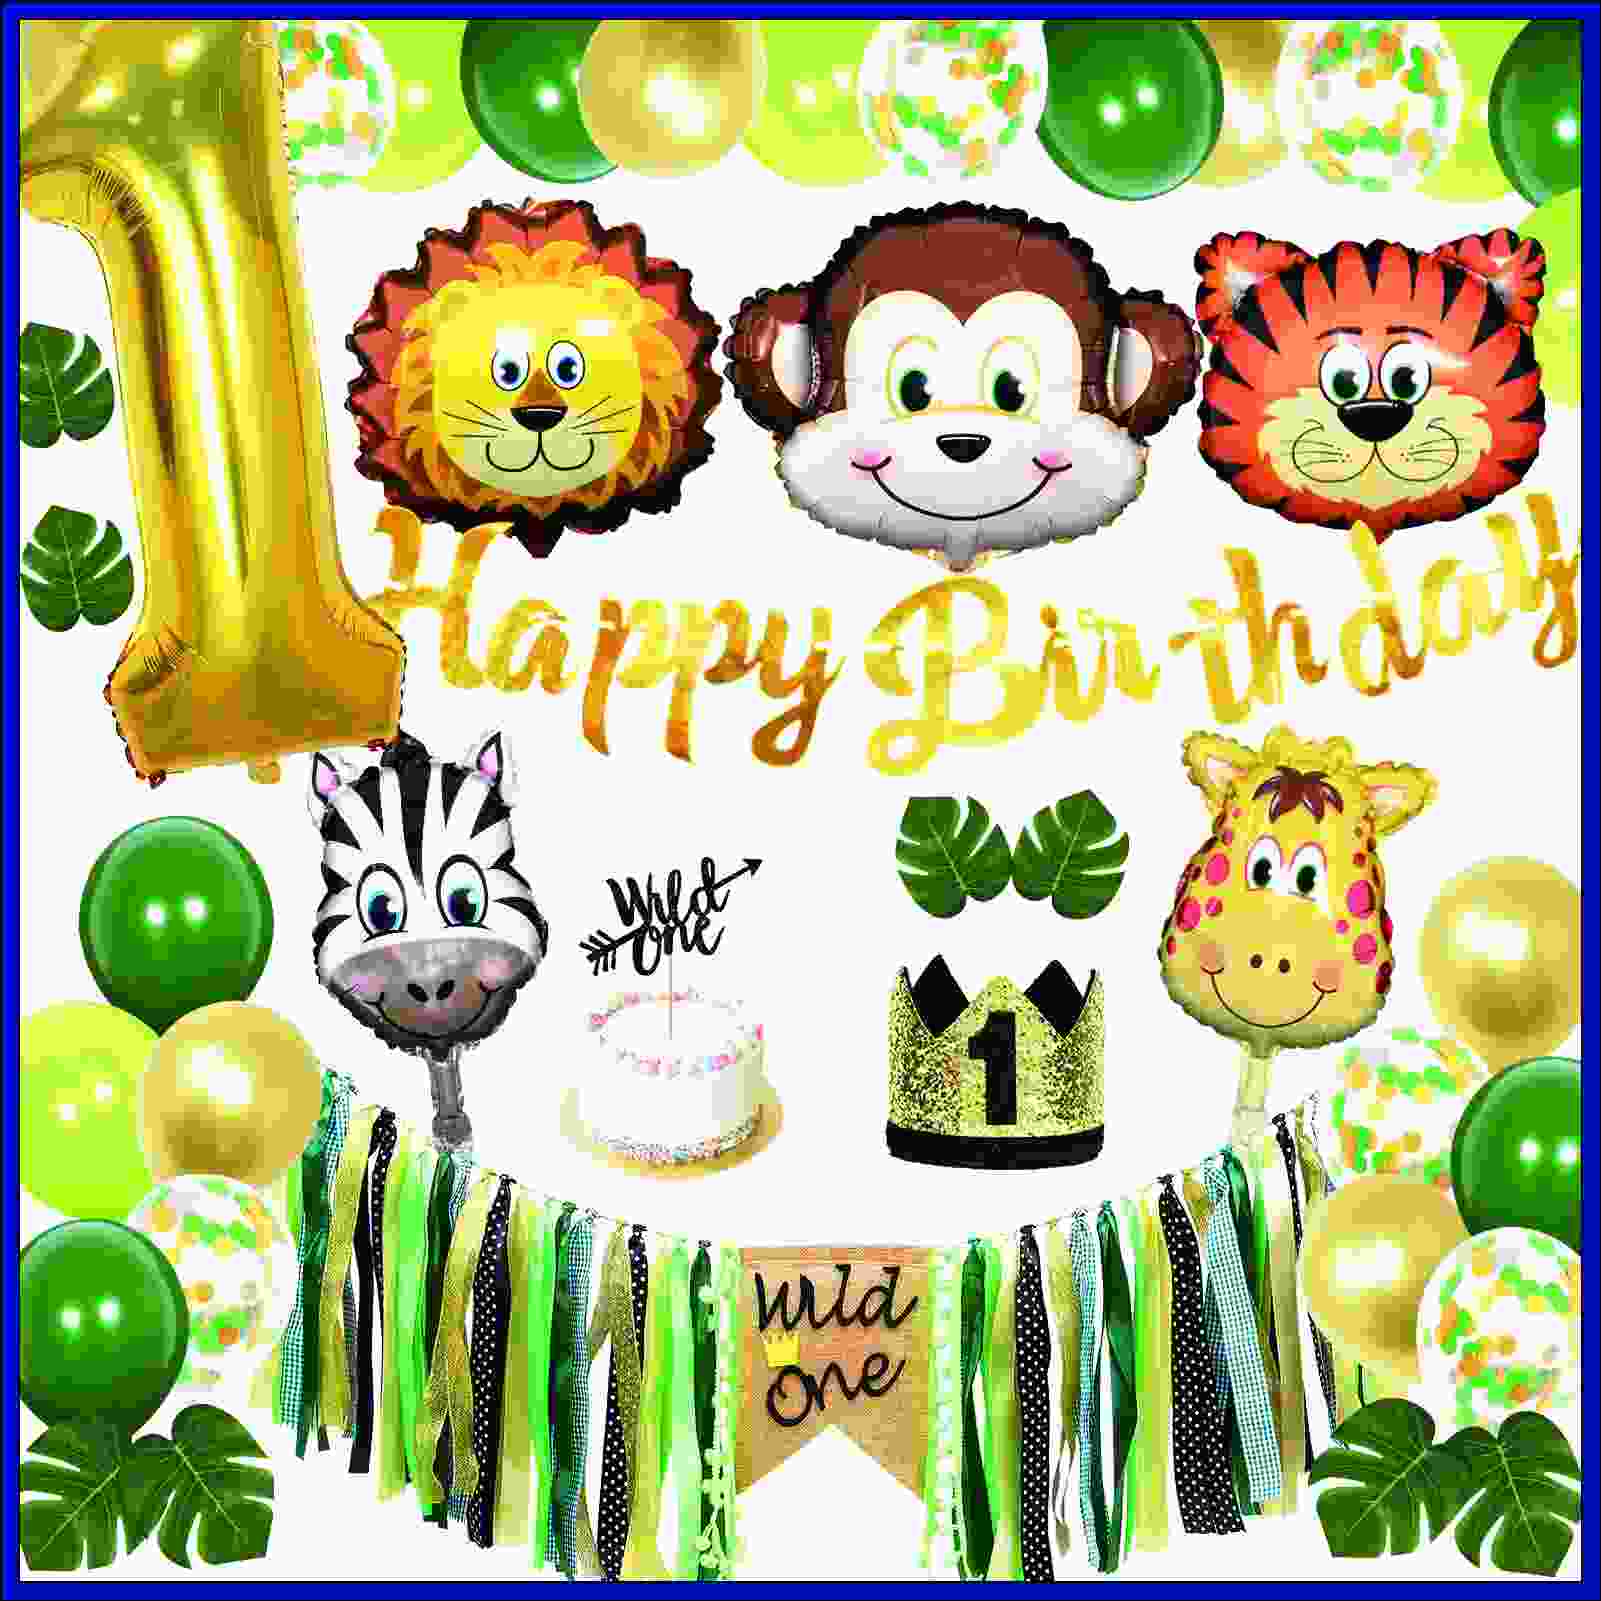 happy birthday wishes 1st birthday
